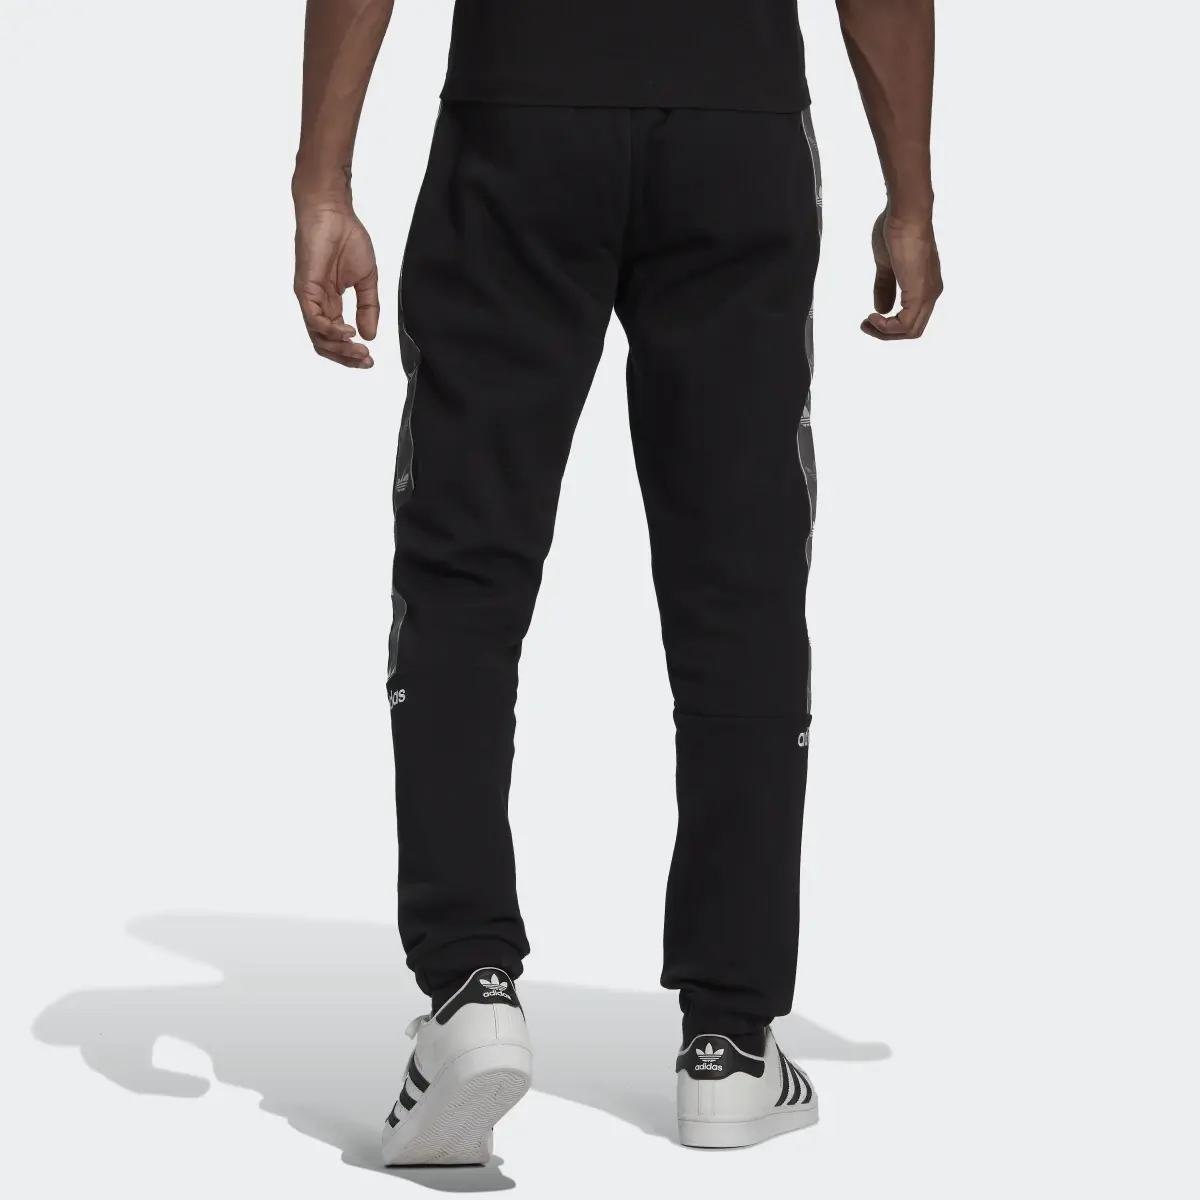 Adidas Tape Fleece Pants. 2